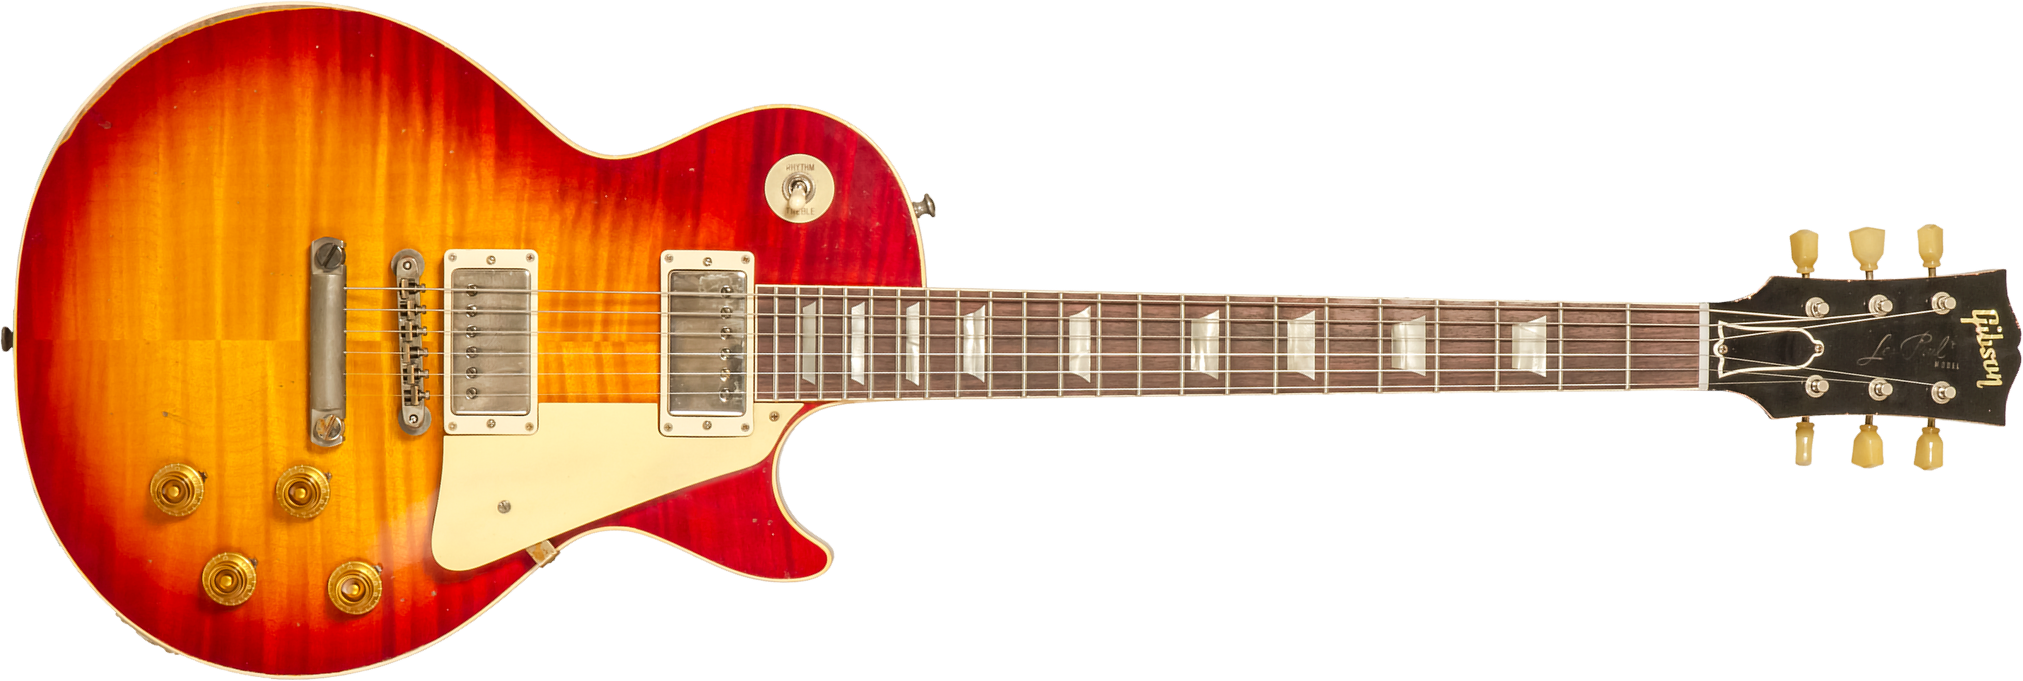 Gibson Custom Shop M2m Les Paul Standard 1959 Reissue 2h Ht Rw #934231 - Murphy Lab Heavy Aged Factory Burst - Guitare Électrique Single Cut - Main pi